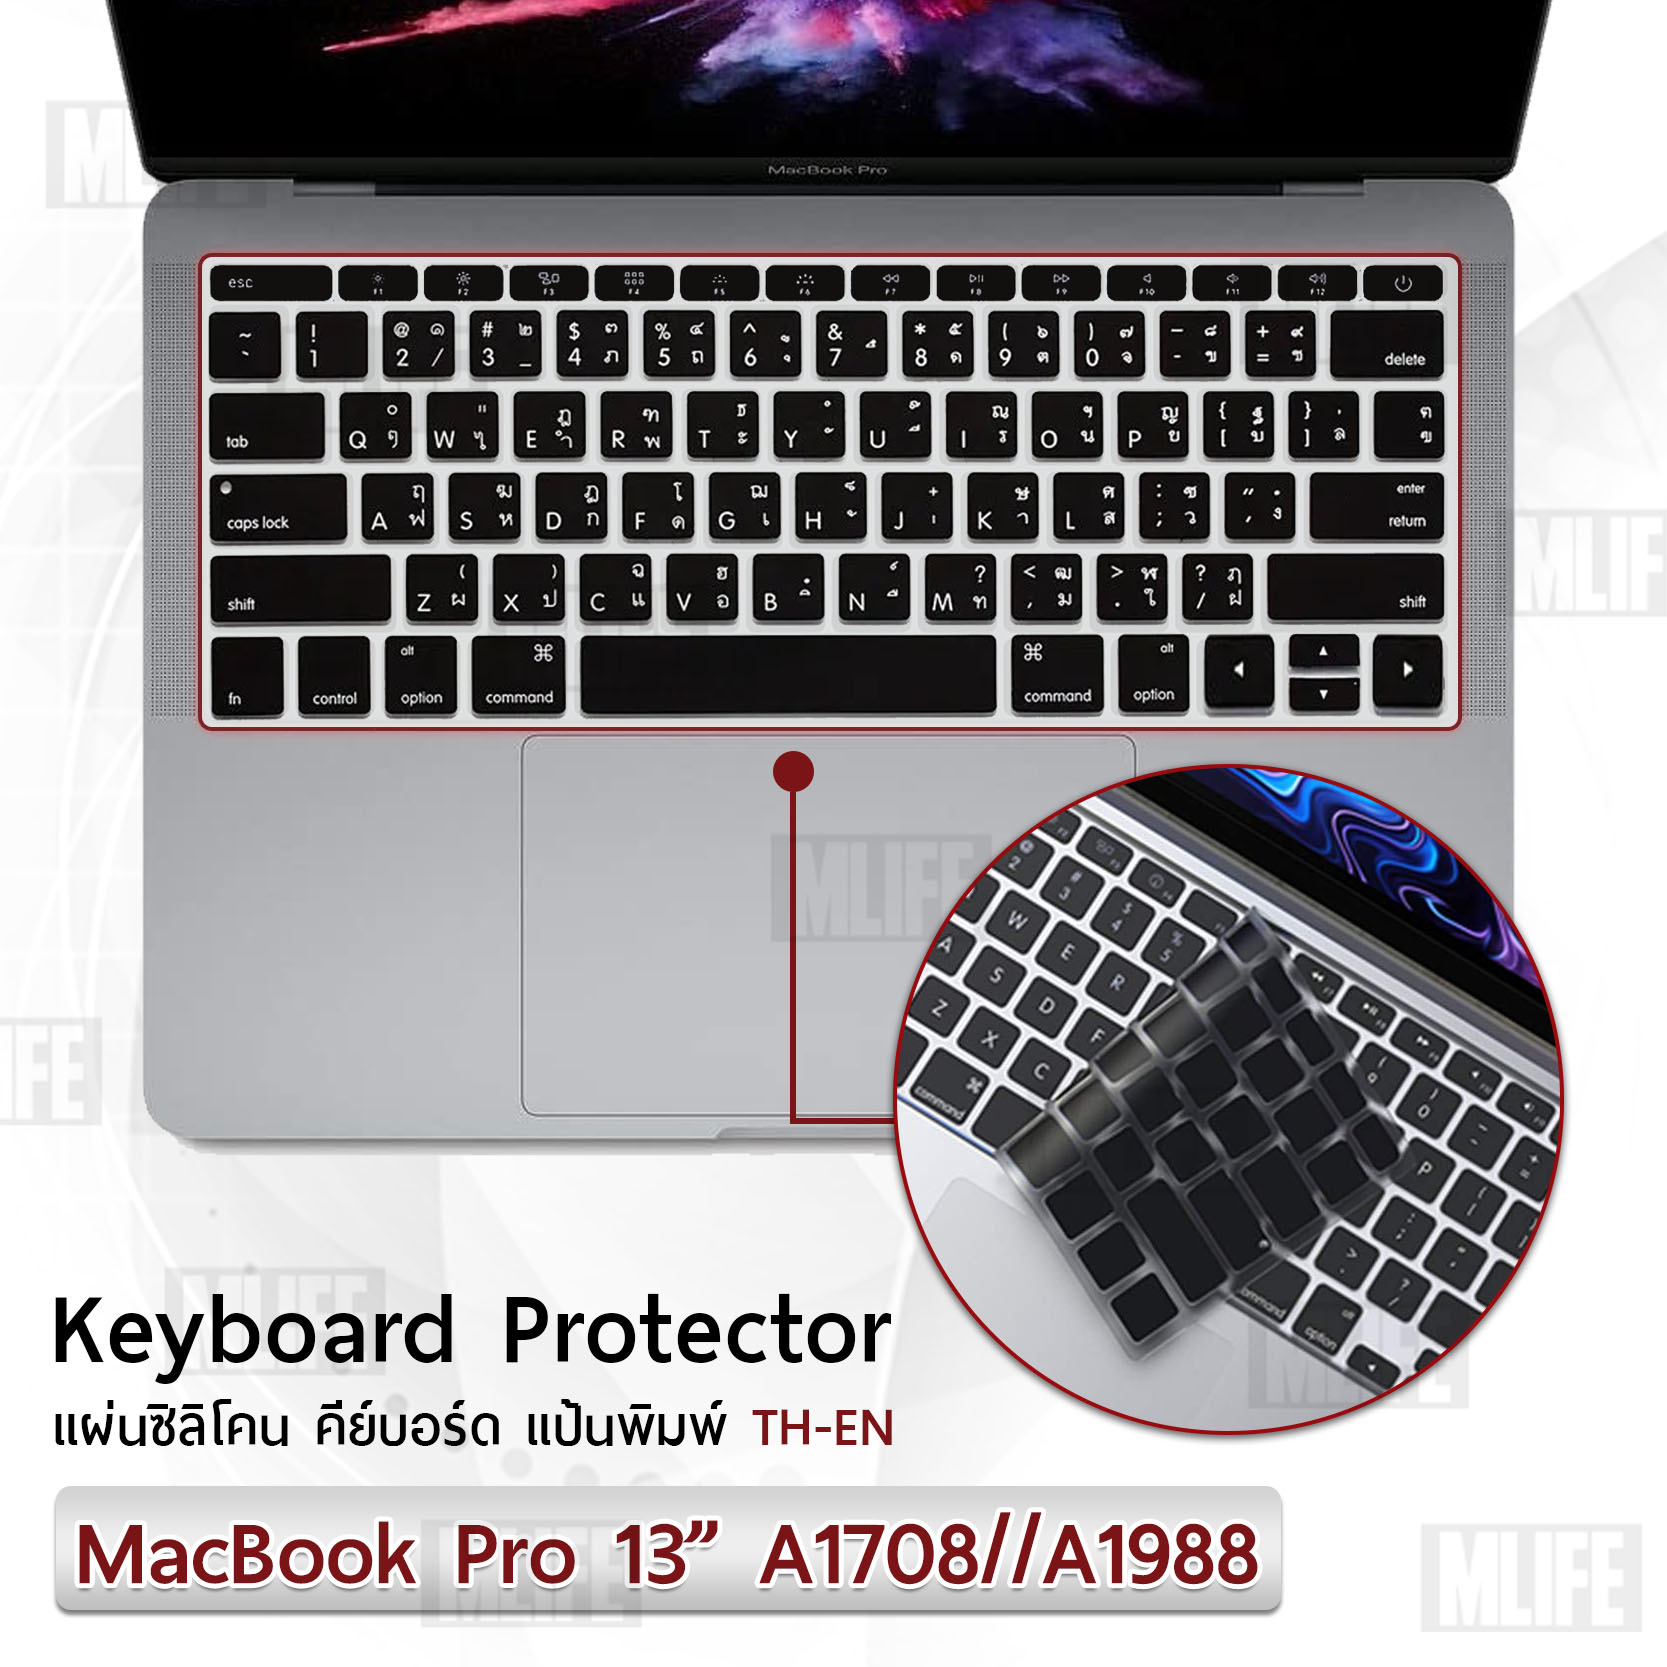 MLIFE - แผ่นซิลิโคน ภาษาไทย MacBook Pro 13 Without Touch Bar A1708 A1988 ซิลิโคนรอง คีย์บอร์ด กันฝุ่น - Silicone Keyboard Cover for MacBook Pro 13” Without Touch Bar A1708 A1988 A1534 A1931 2019/2018/2017/2016